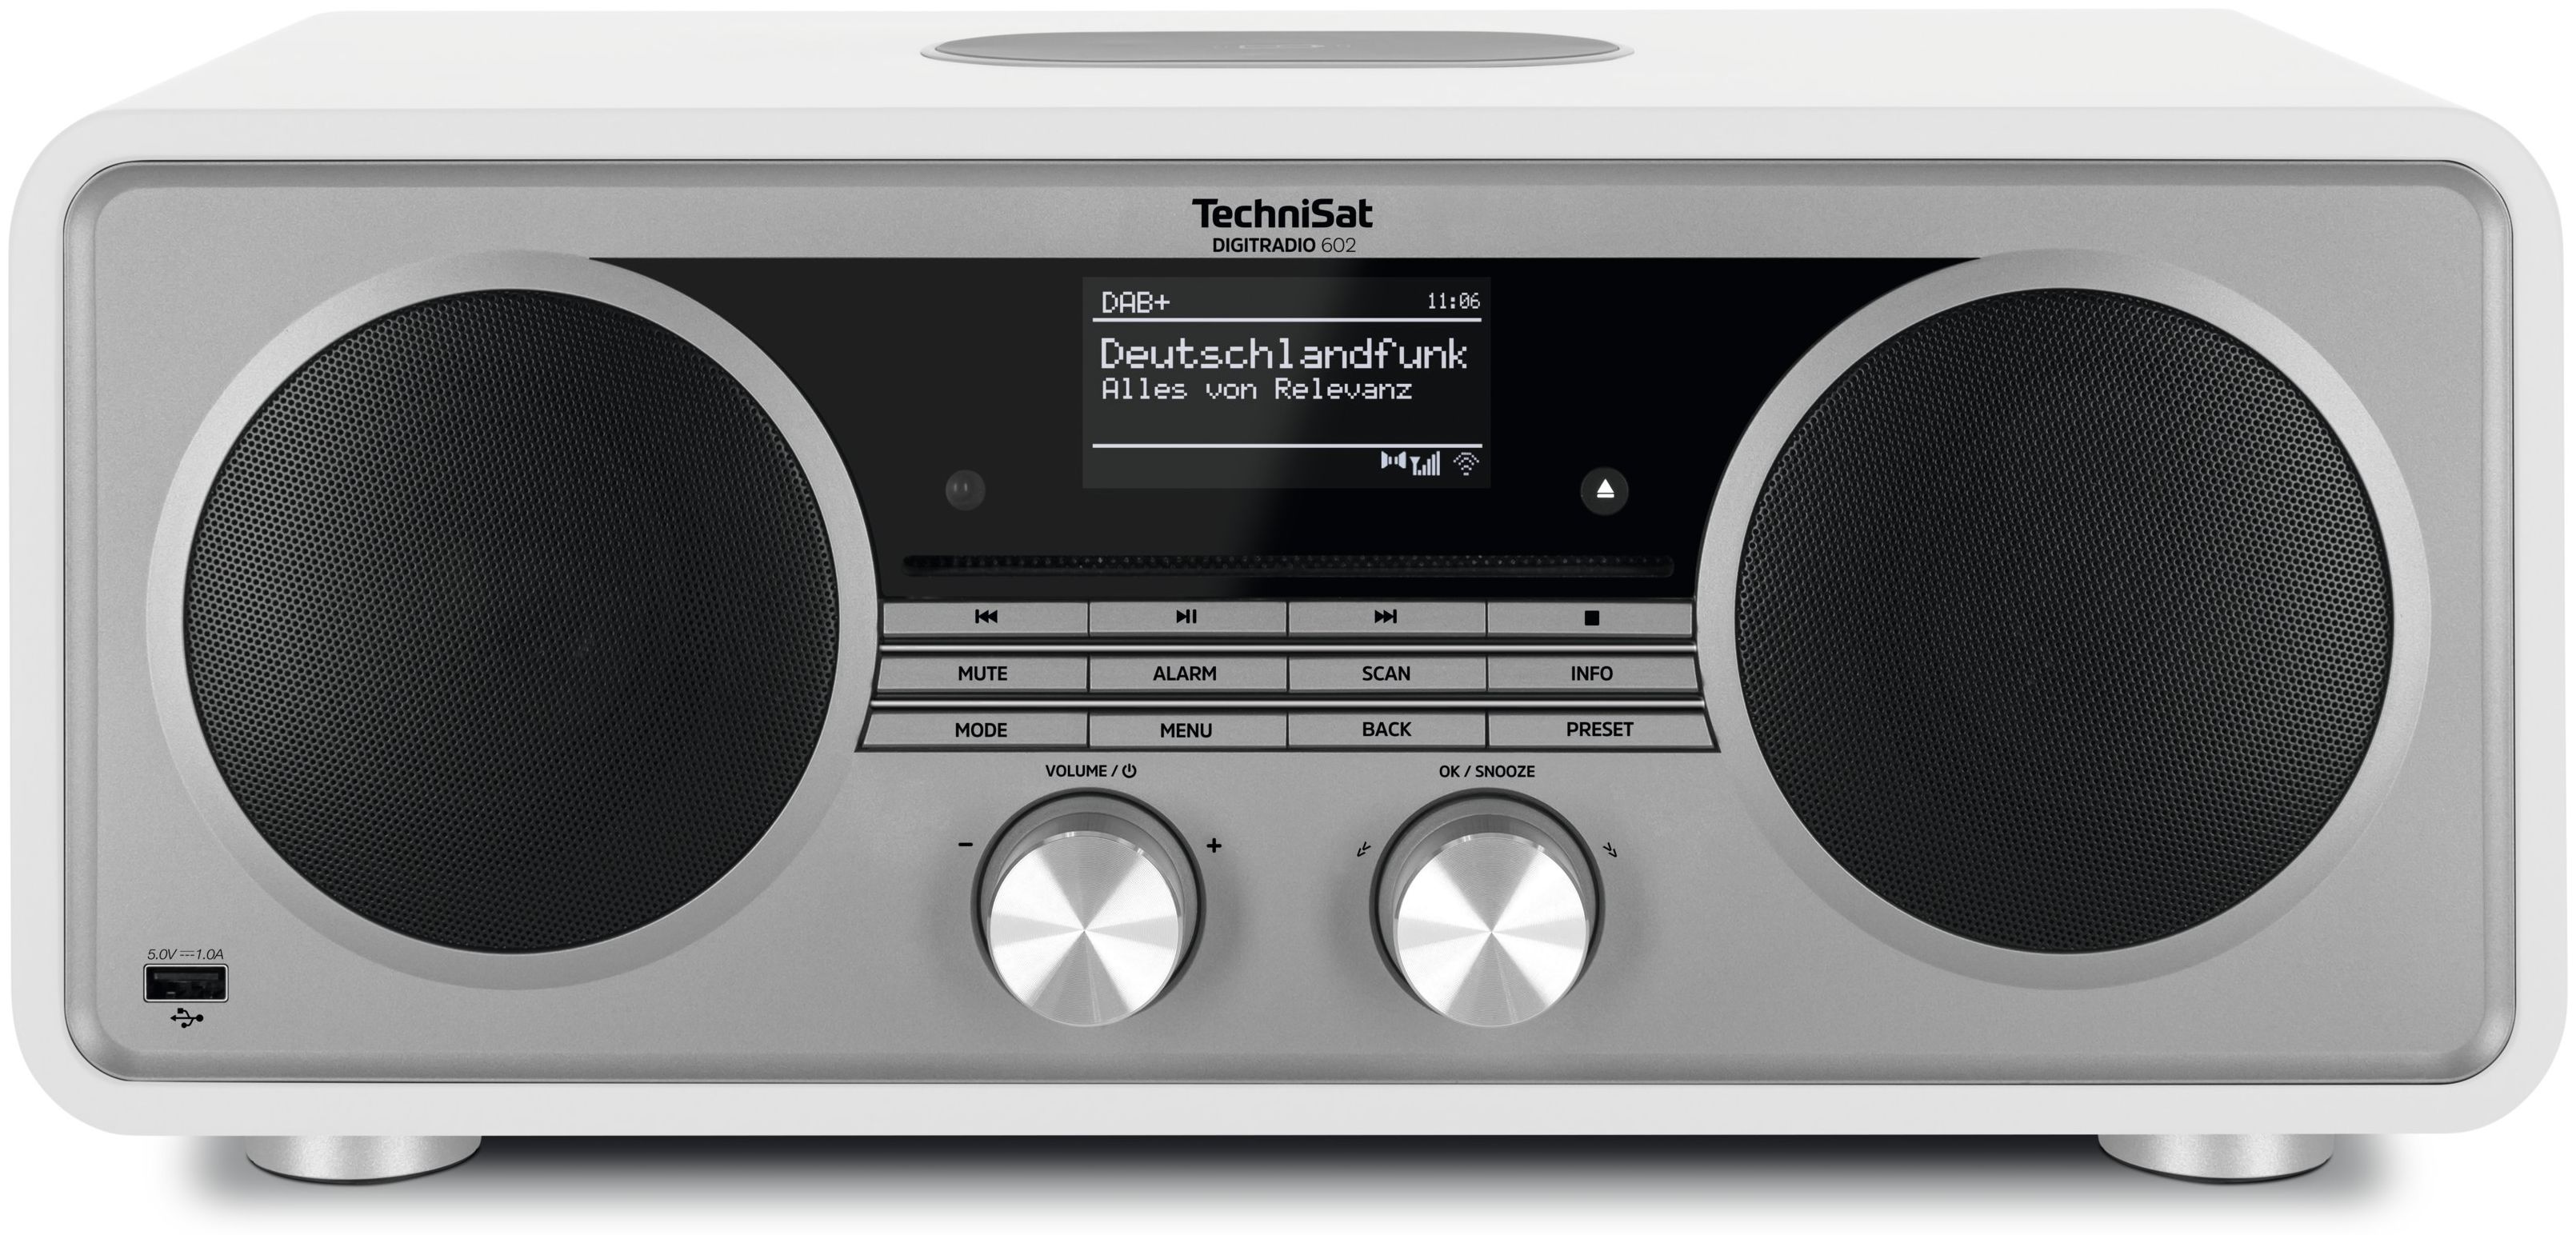 Internet von TechniSat FM Digitradio Bluetooth Radio expert 602 Technomarkt (Silber, DAB+, Weiß)